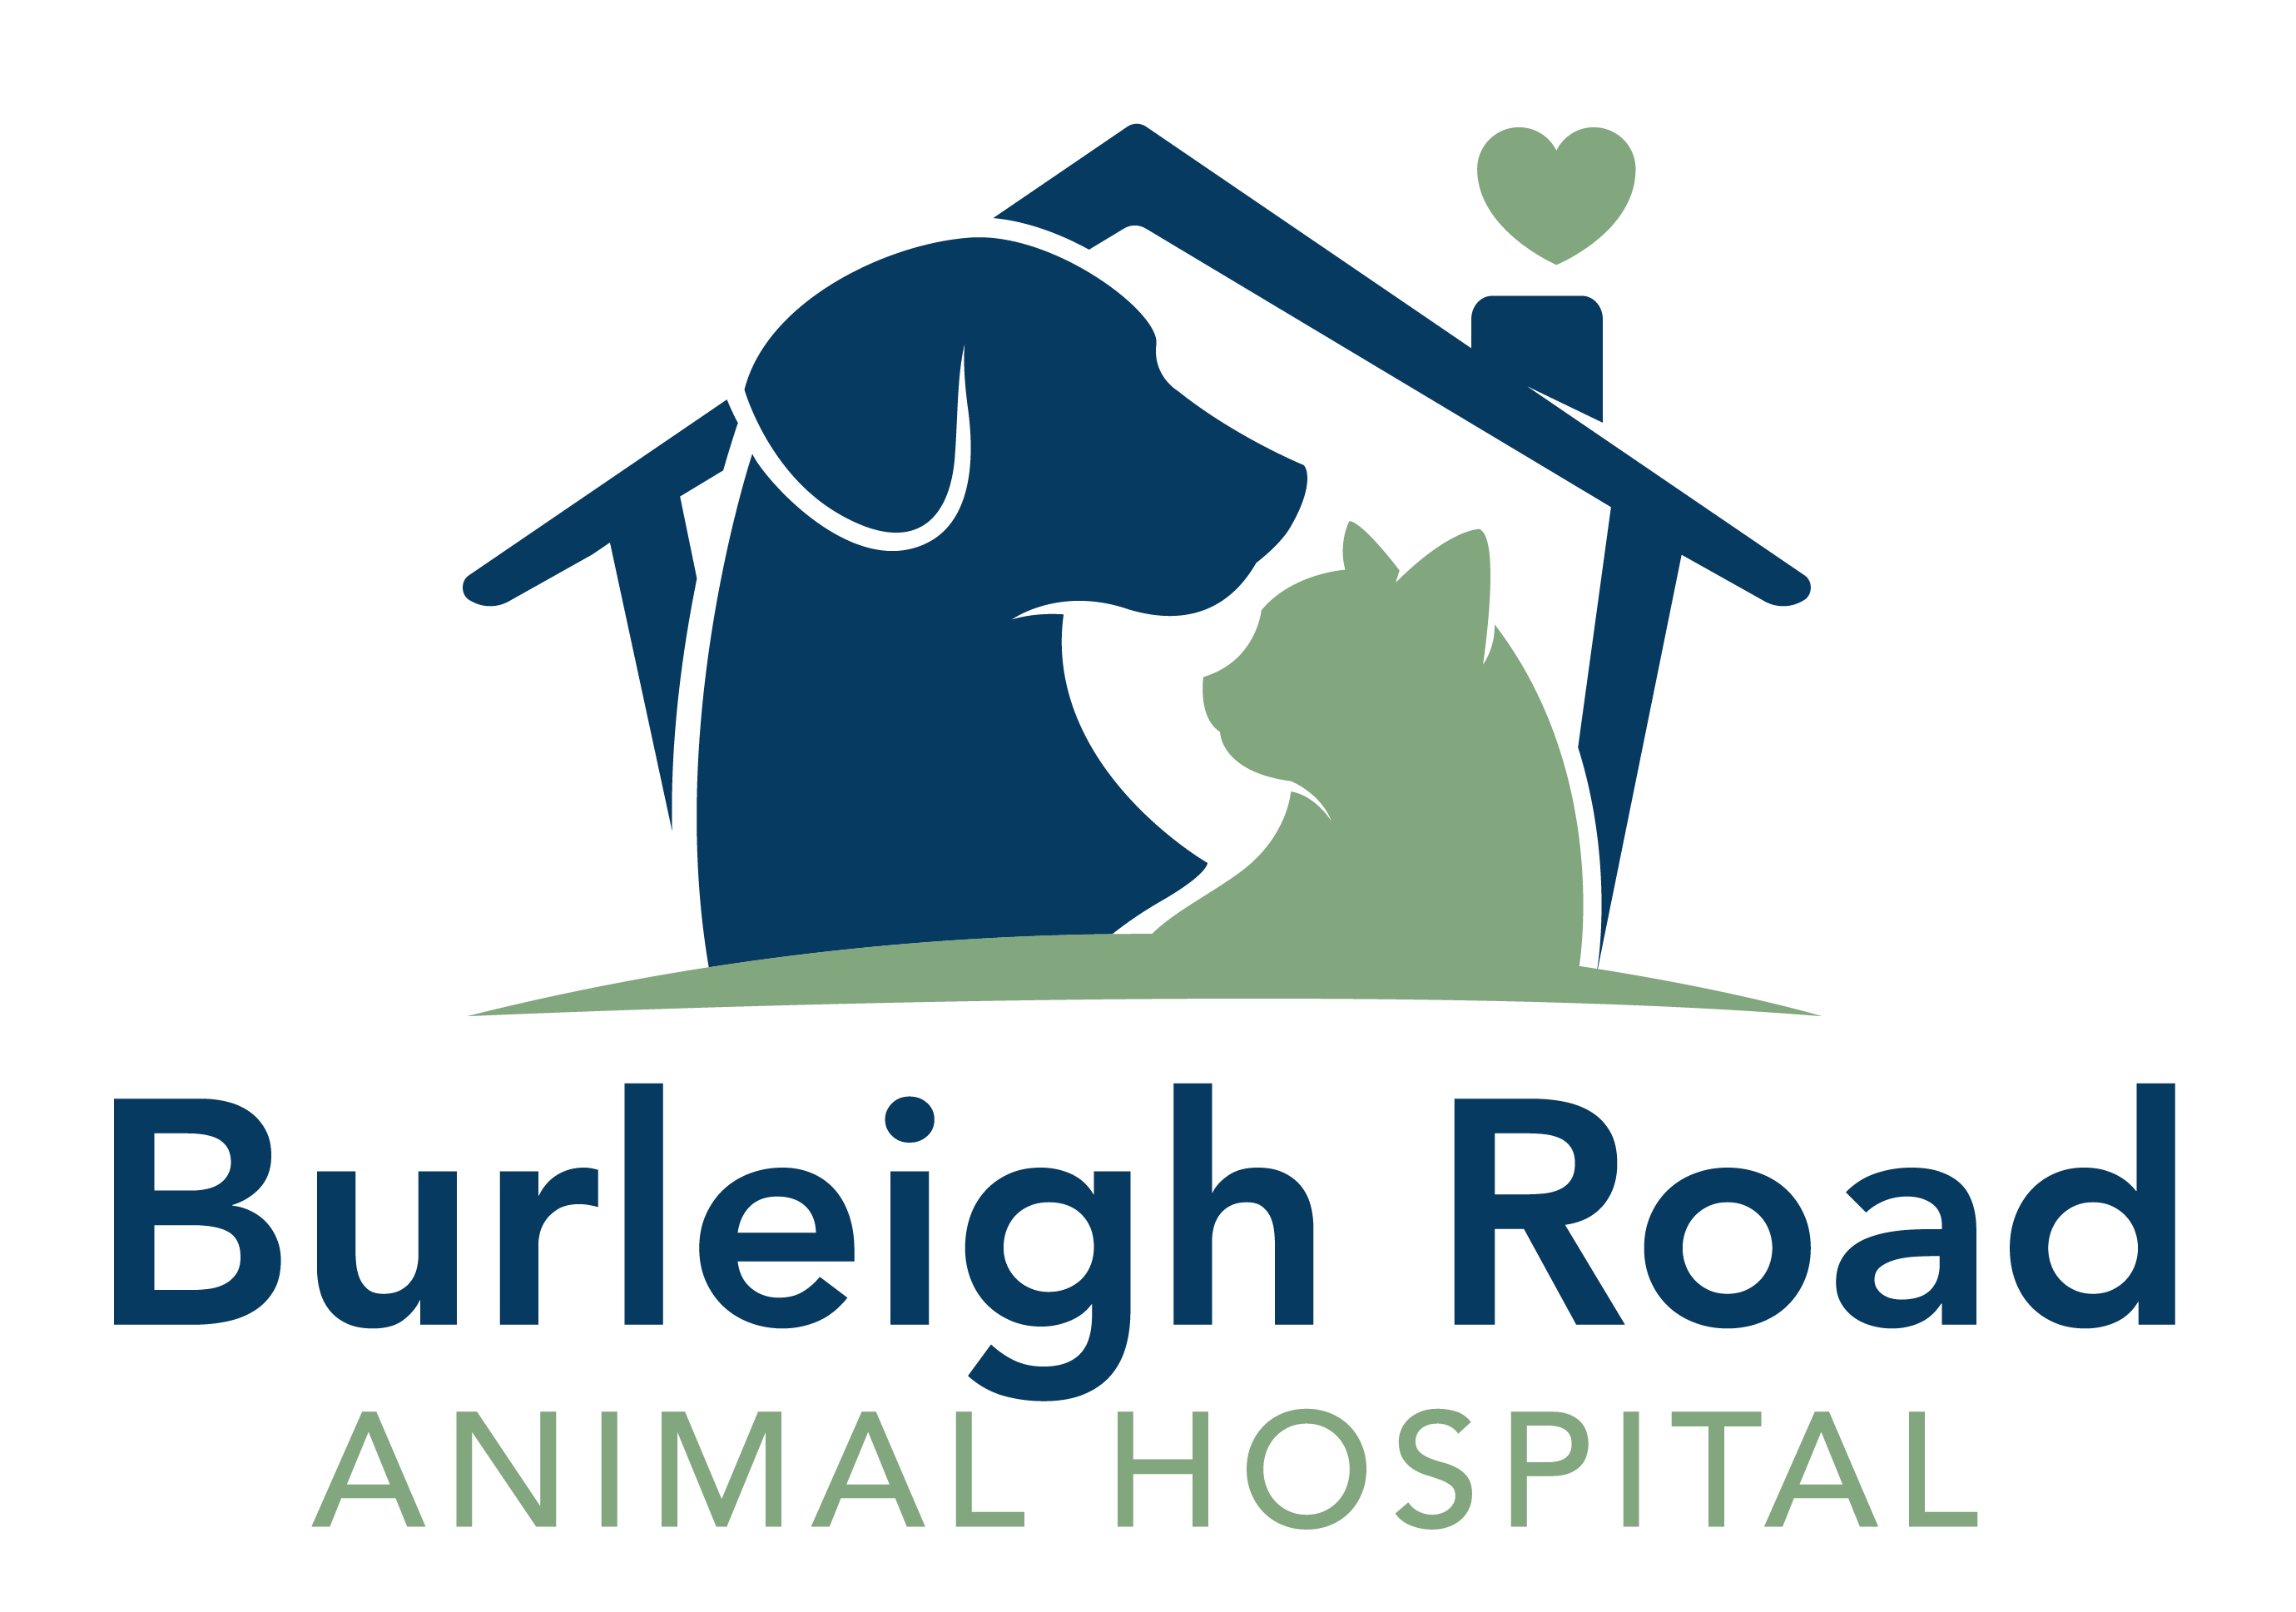 Burleigh Road Animal Hospital